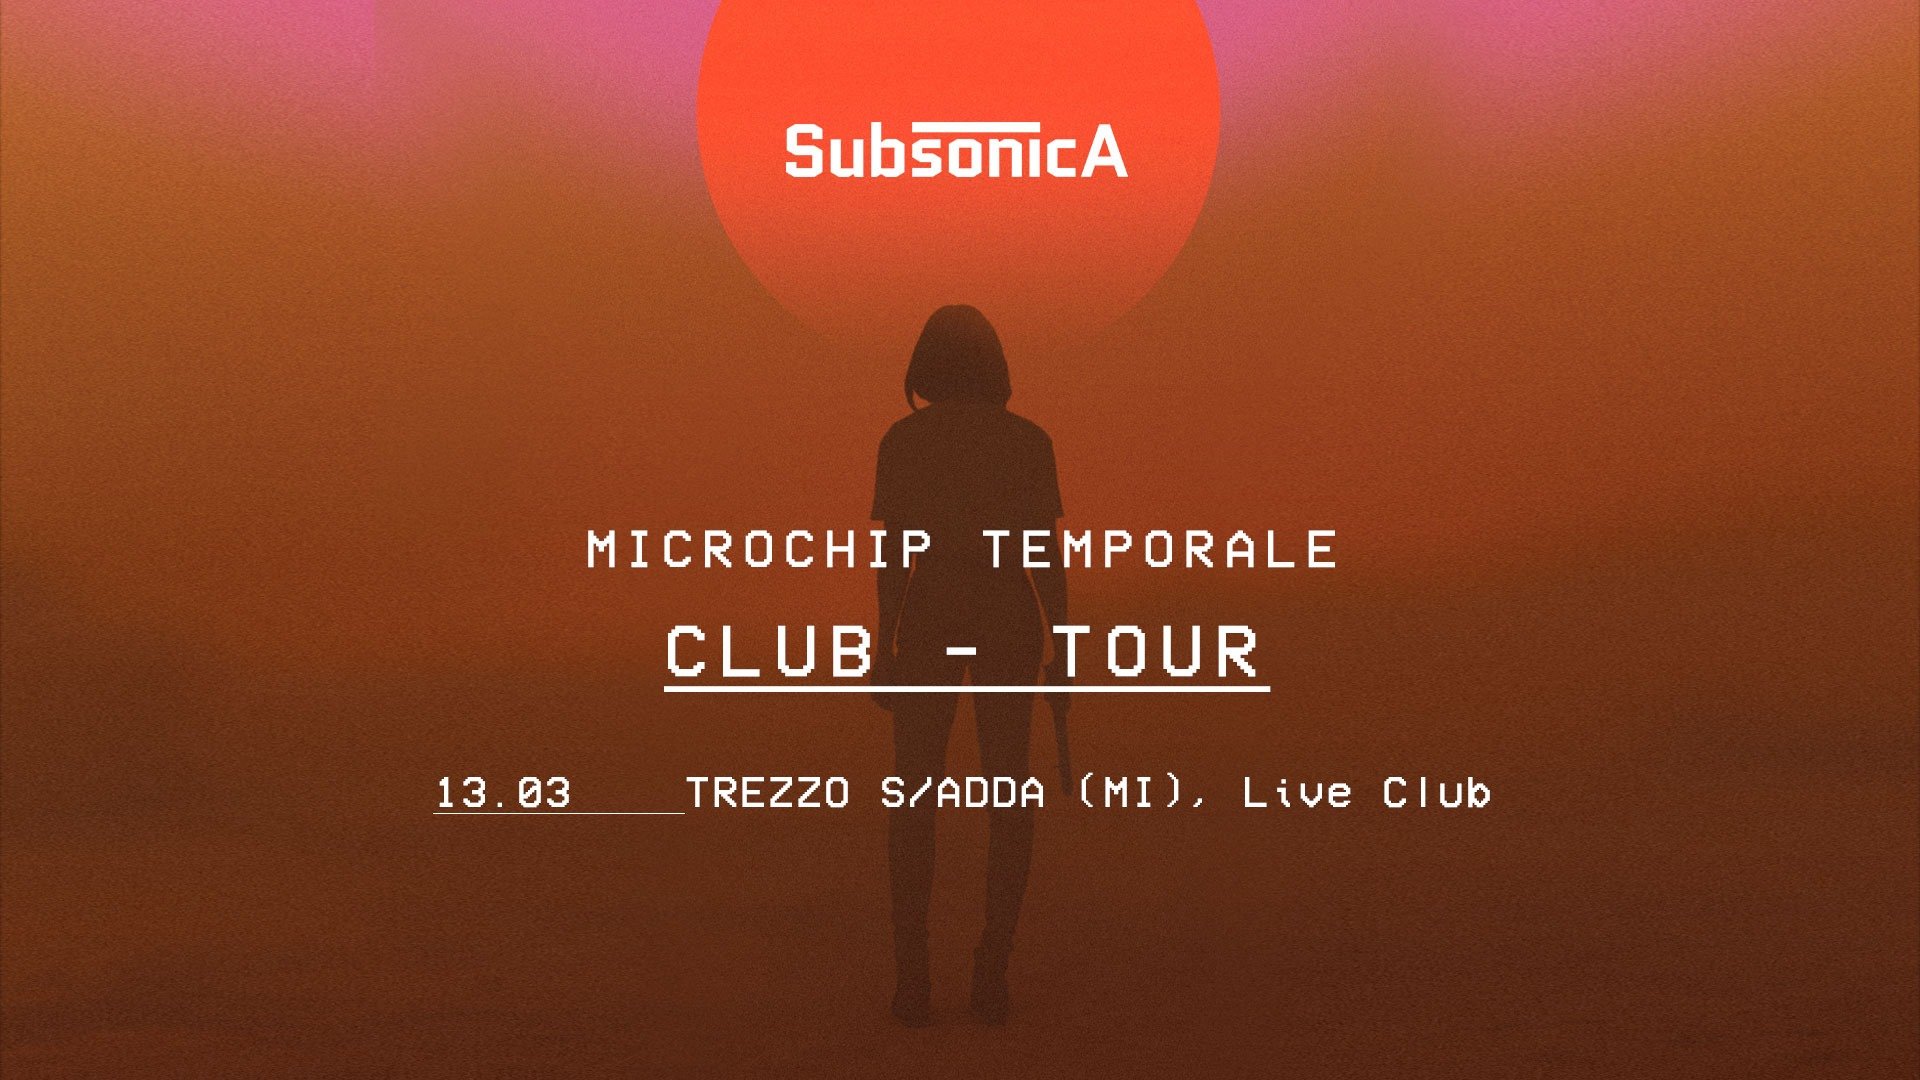 Live Music Club Trezzo sull'Adda, Subsonica - Microchip Temporale Club Tour